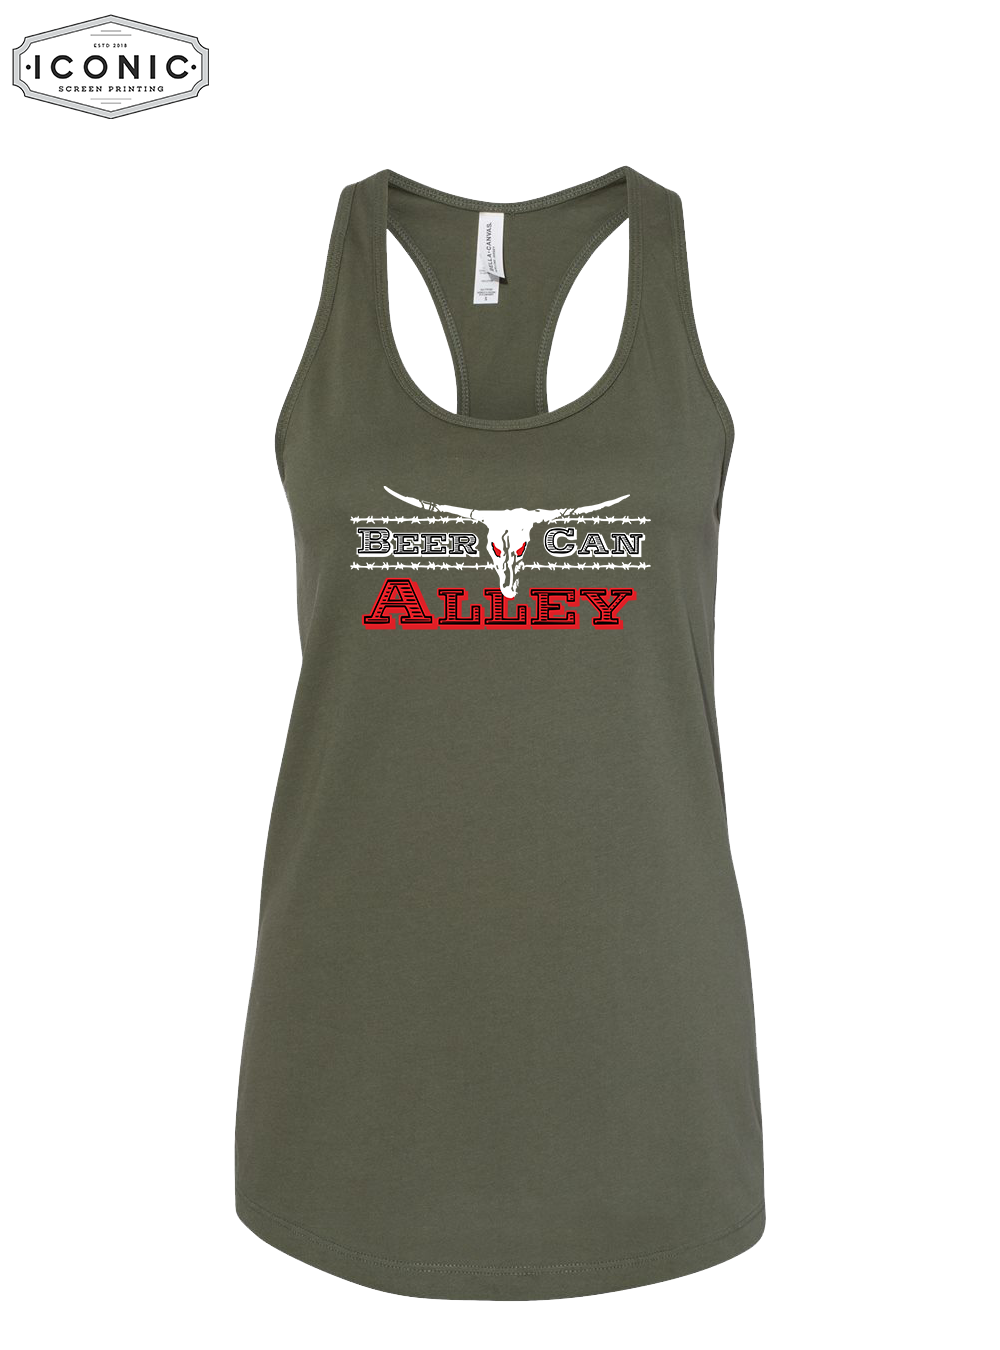 BCA - Women's Jersey Racerback Tank